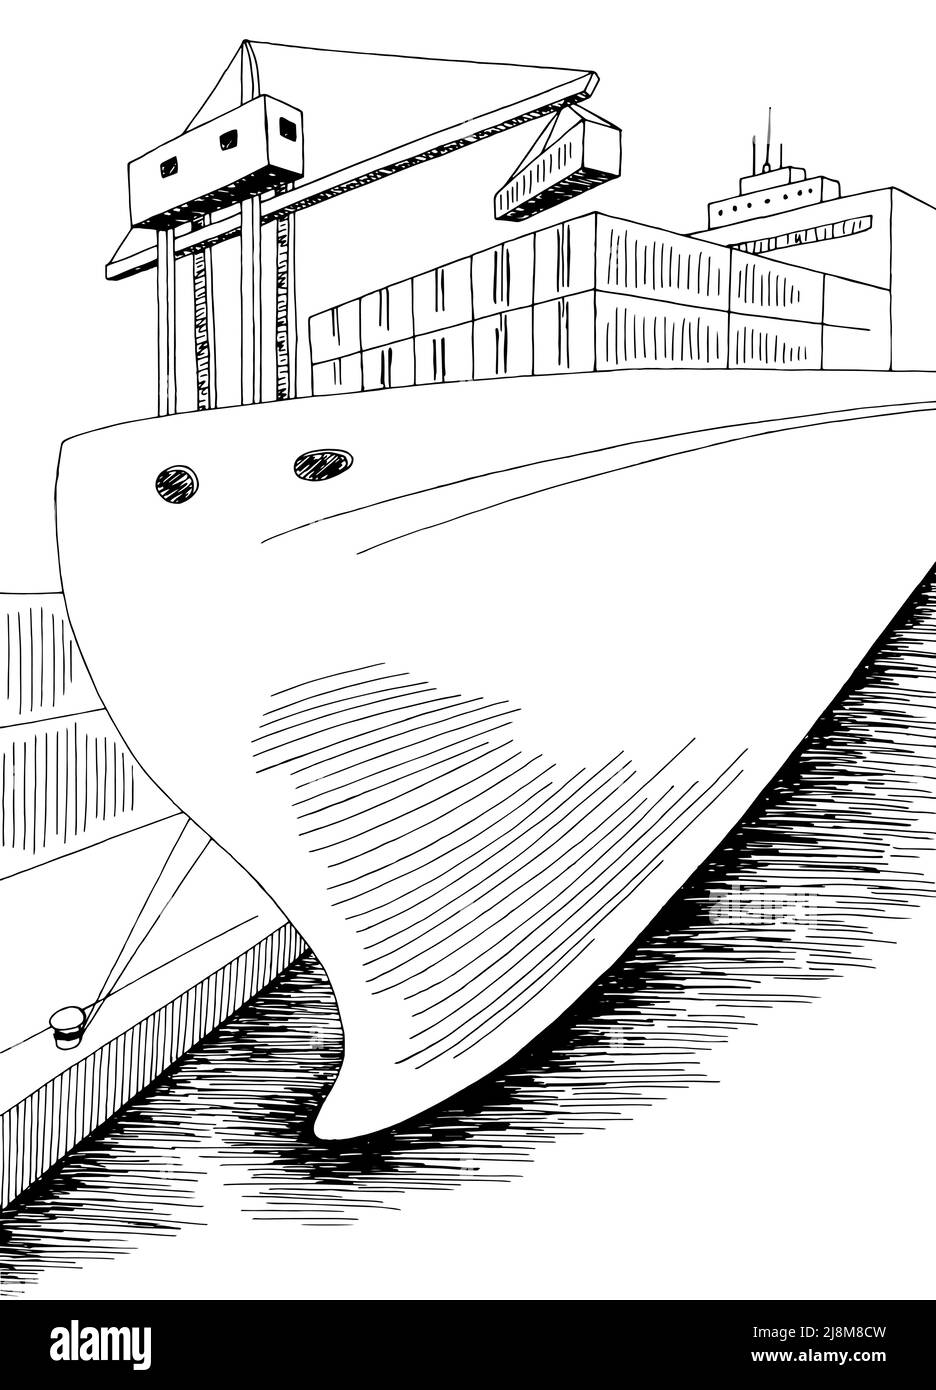 Port chargement Dry cargo navire graphique noir blanc mer vertical paysage dessin vecteur d'illustration Illustration de Vecteur